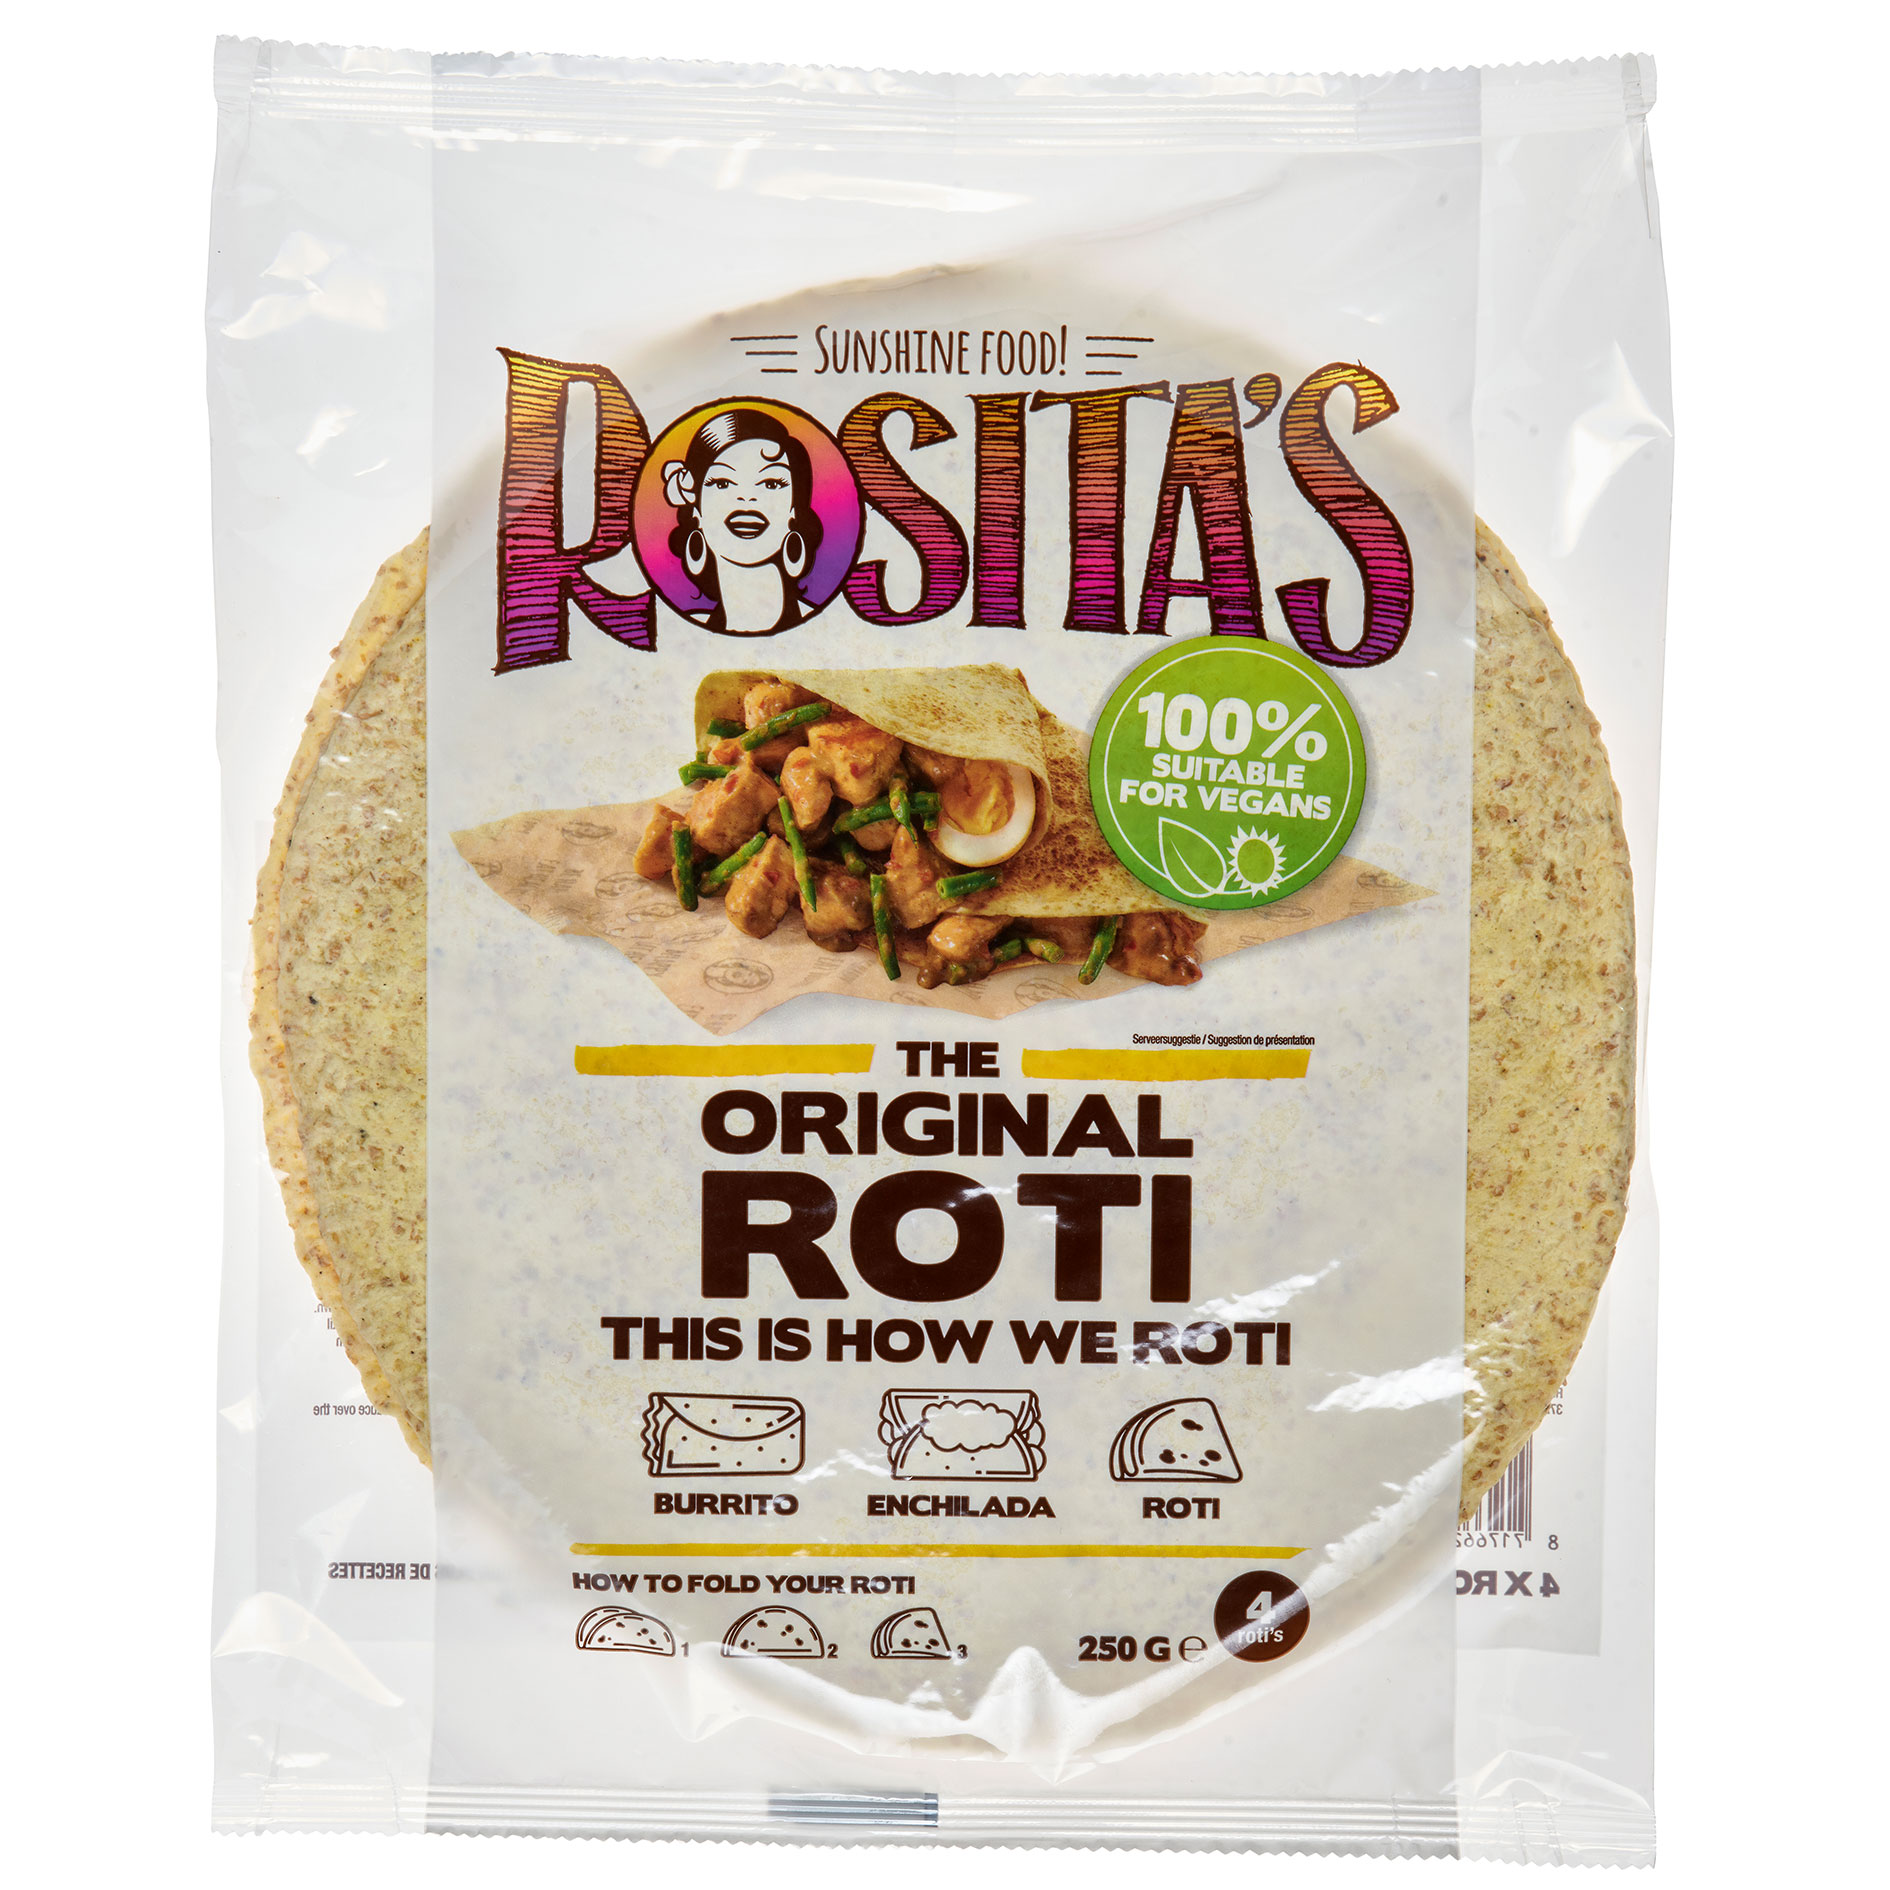 Rositas-Roti-Original-web.jpg